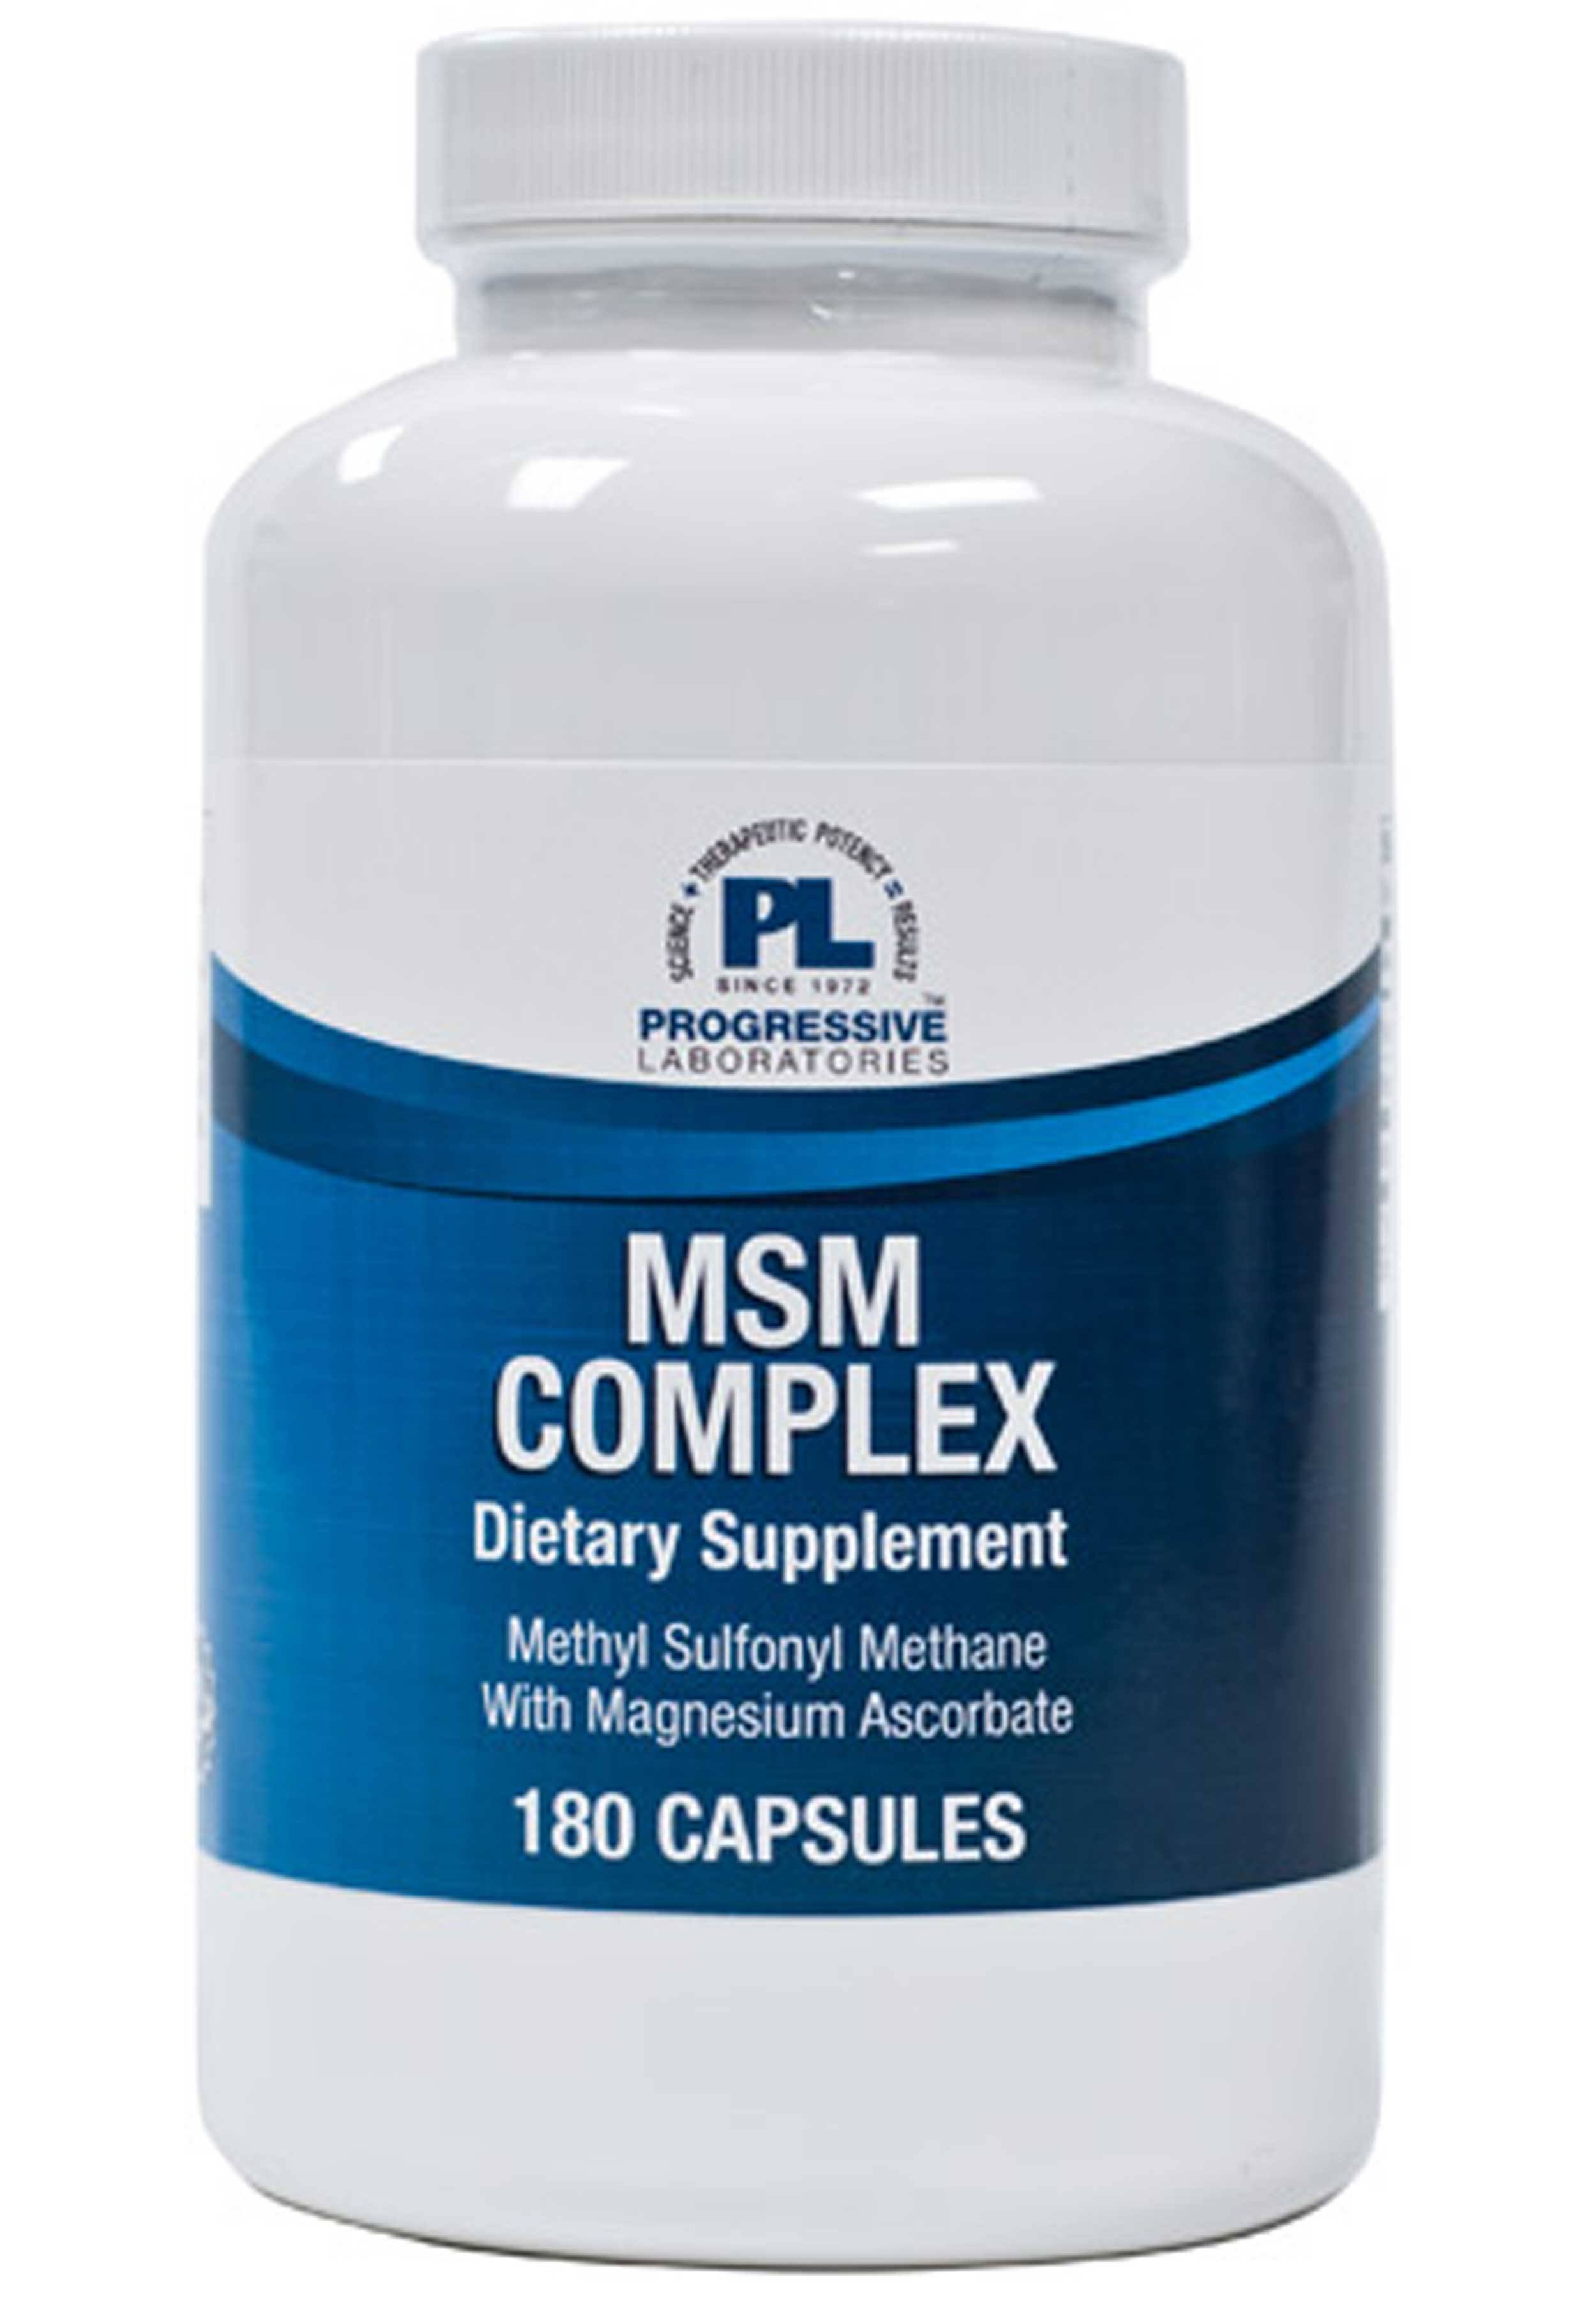 Progressive Labs MSM Complex Dietray Supplement - 180ct